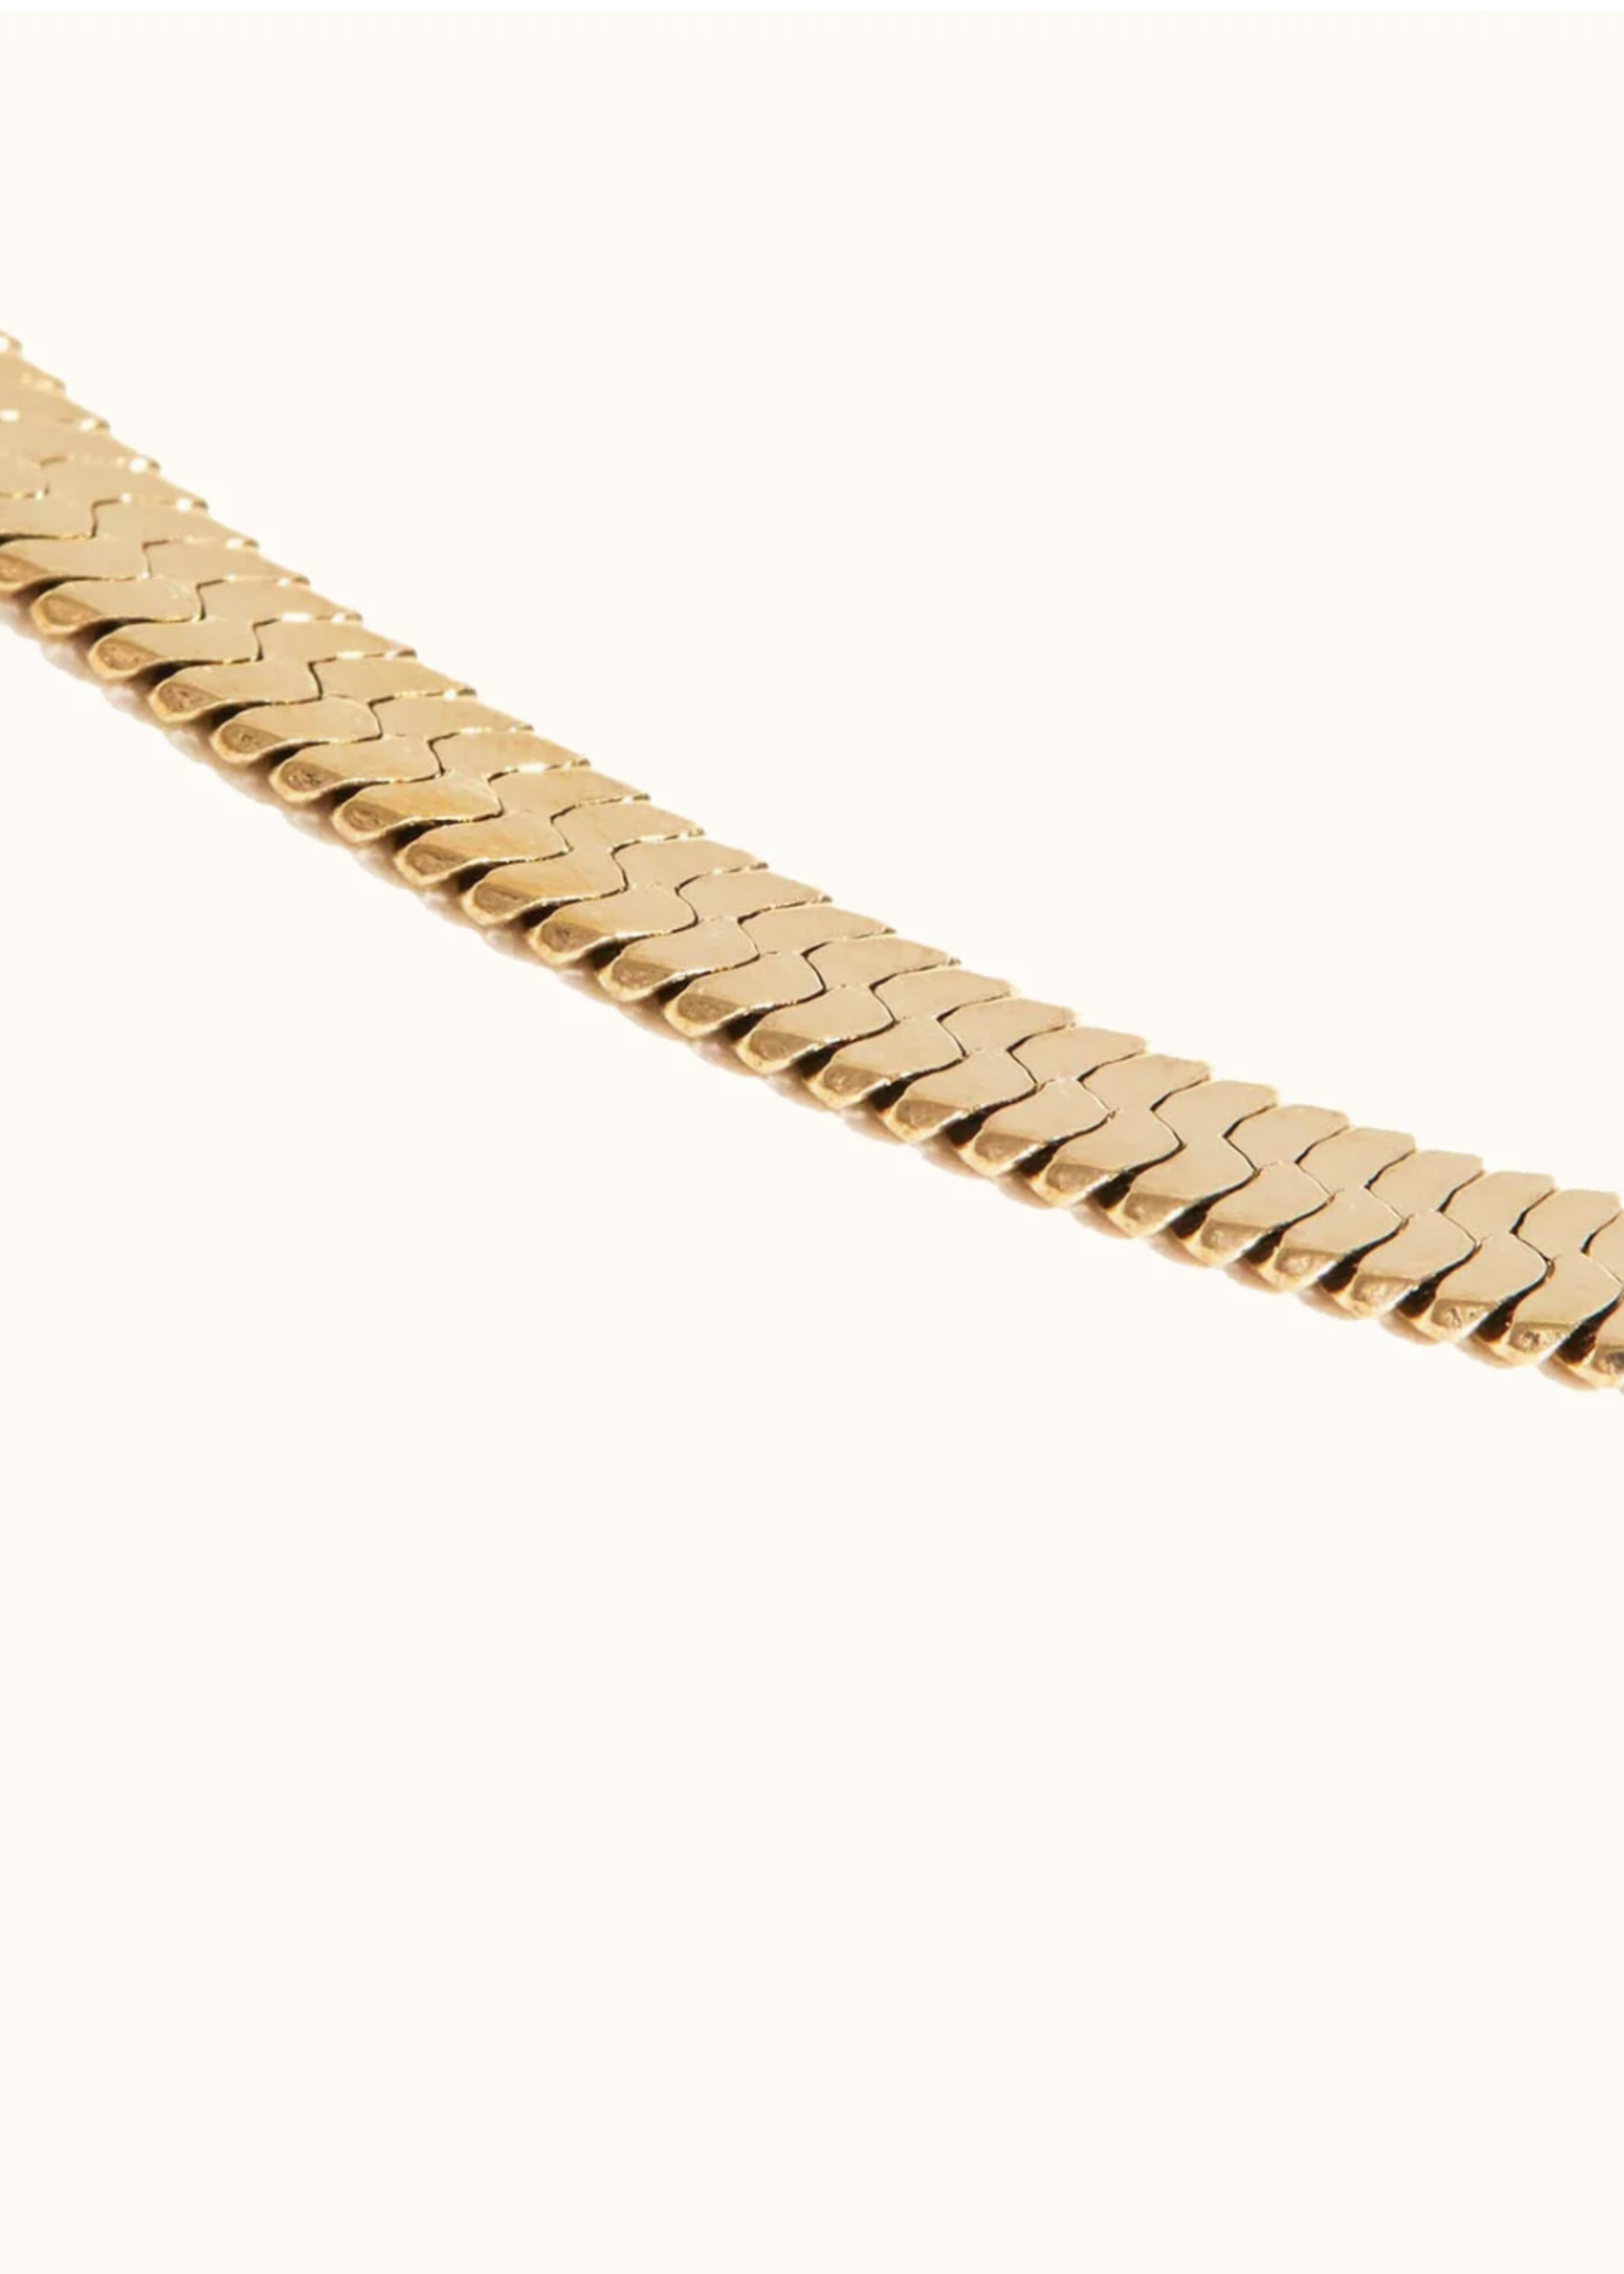 Elitaire Boutique Herringbone Chain Necklace: Vermeil